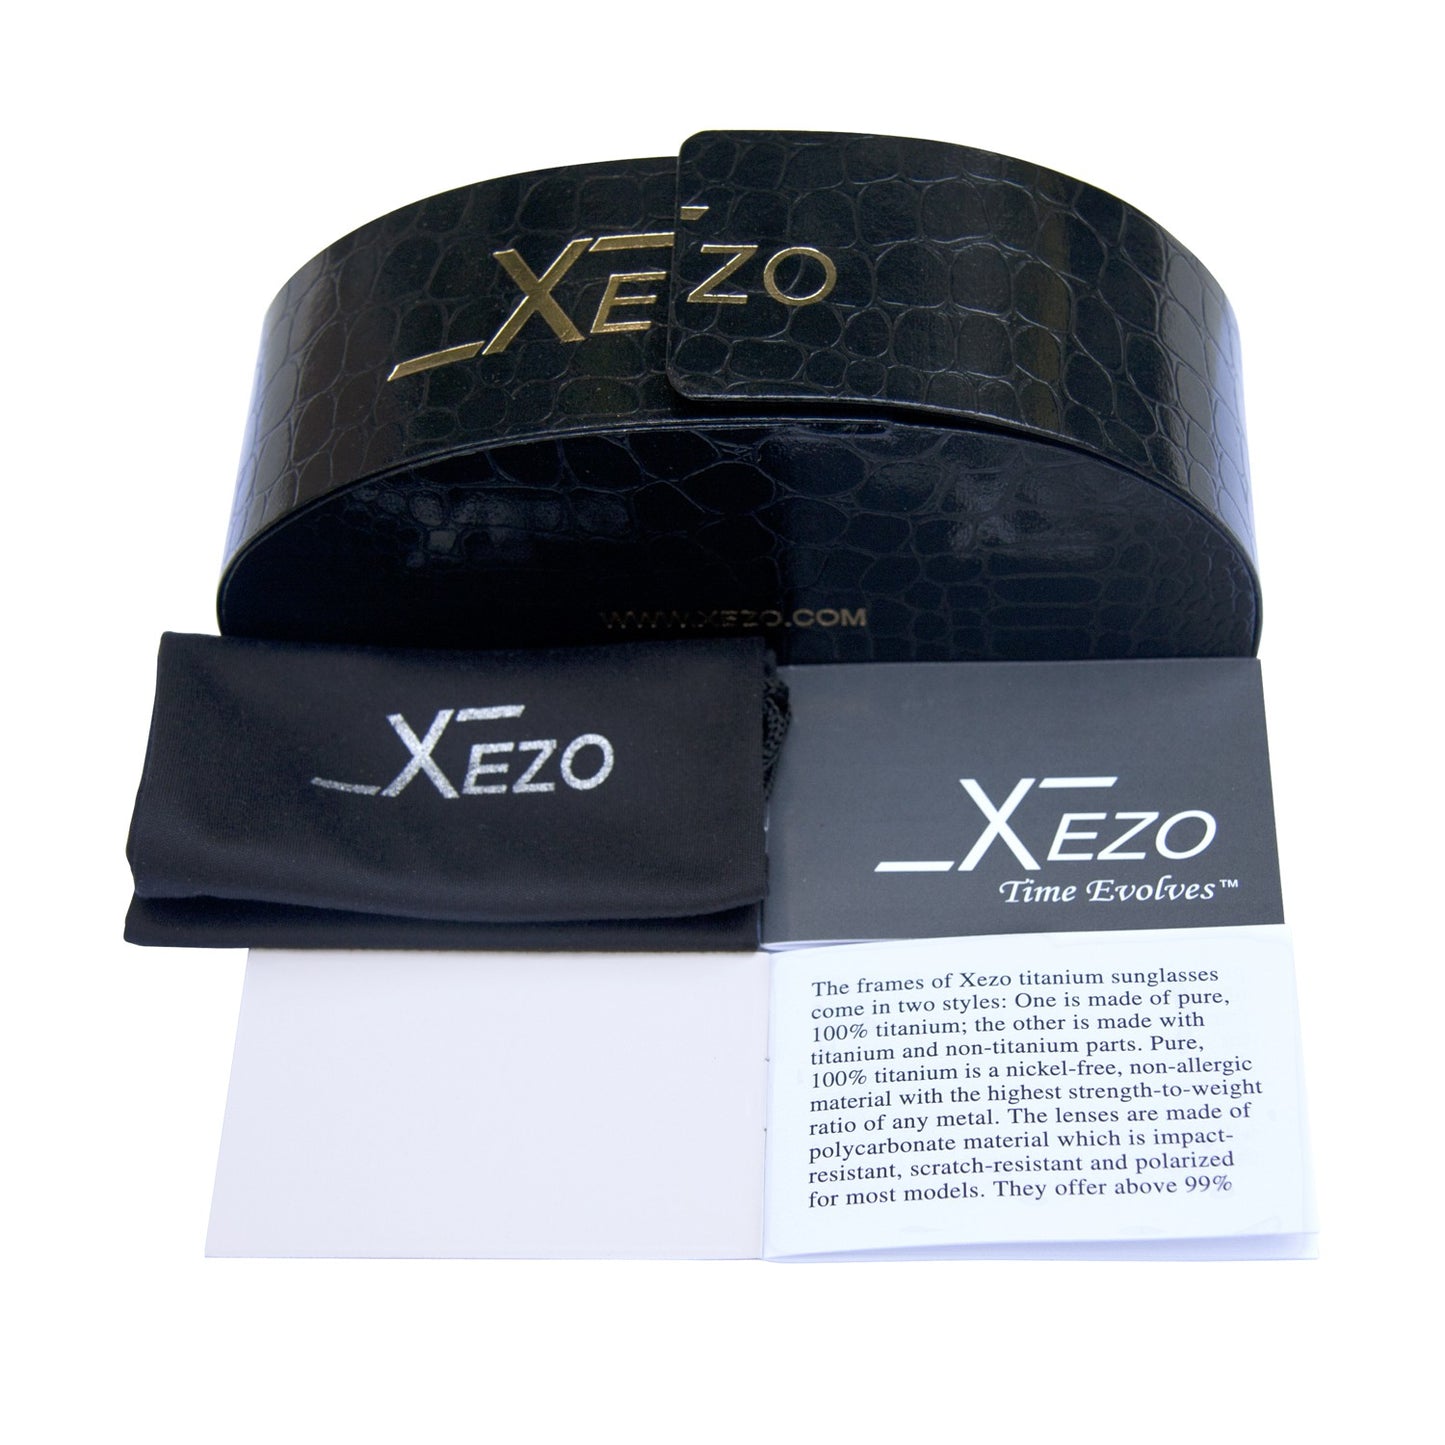 Xezo - Intrepid 6500 G